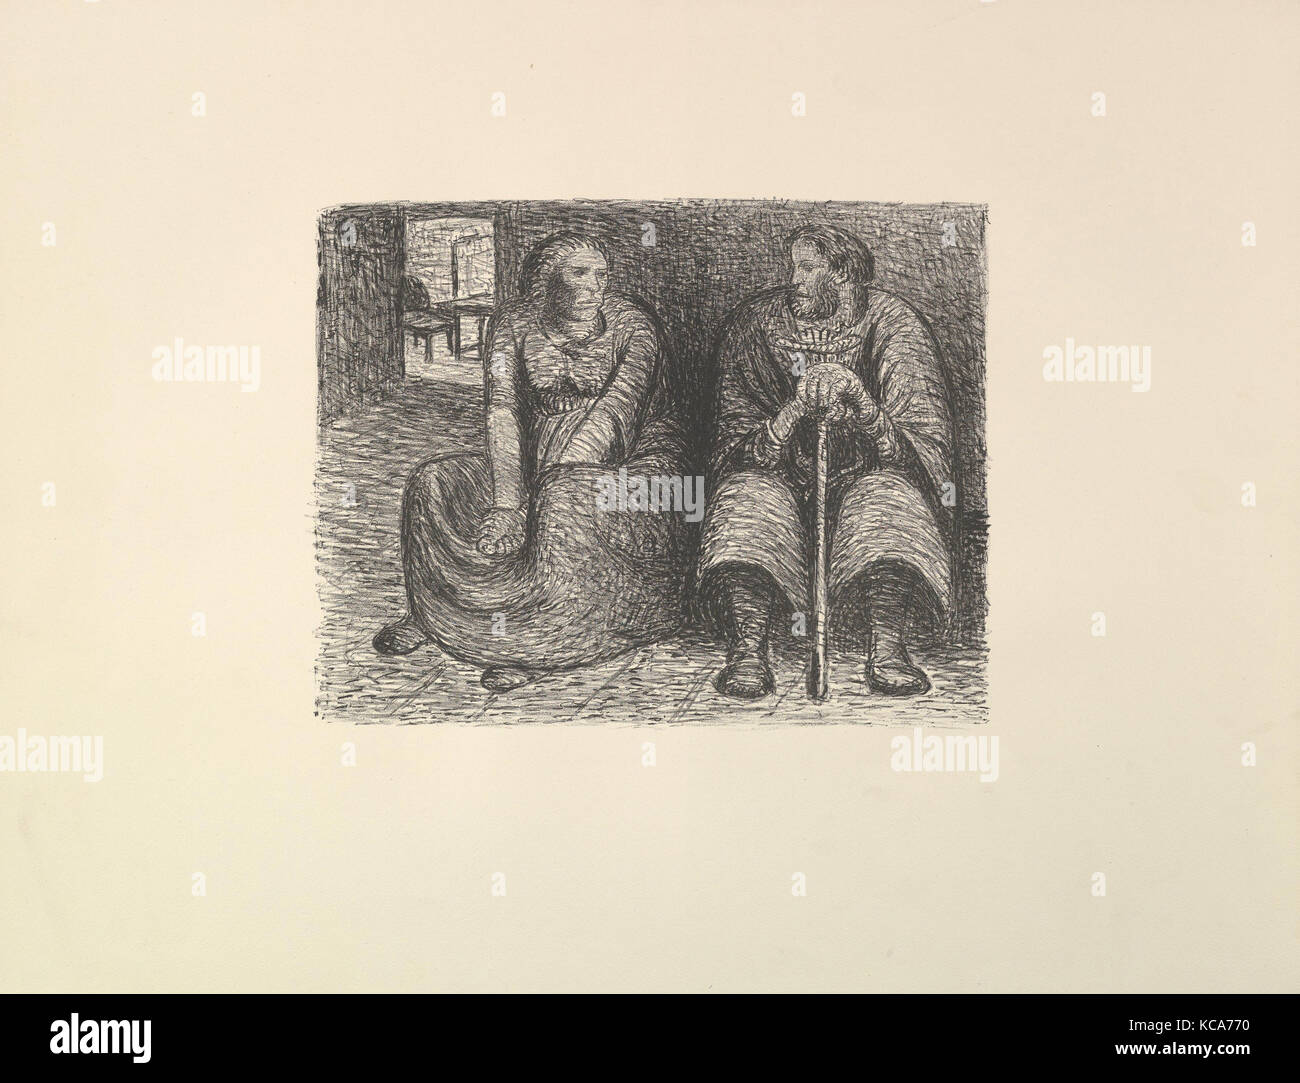 The Pair in a Conversation (Das Paar im Gespräch), Ernst Barlach, 1912 Stock Photo